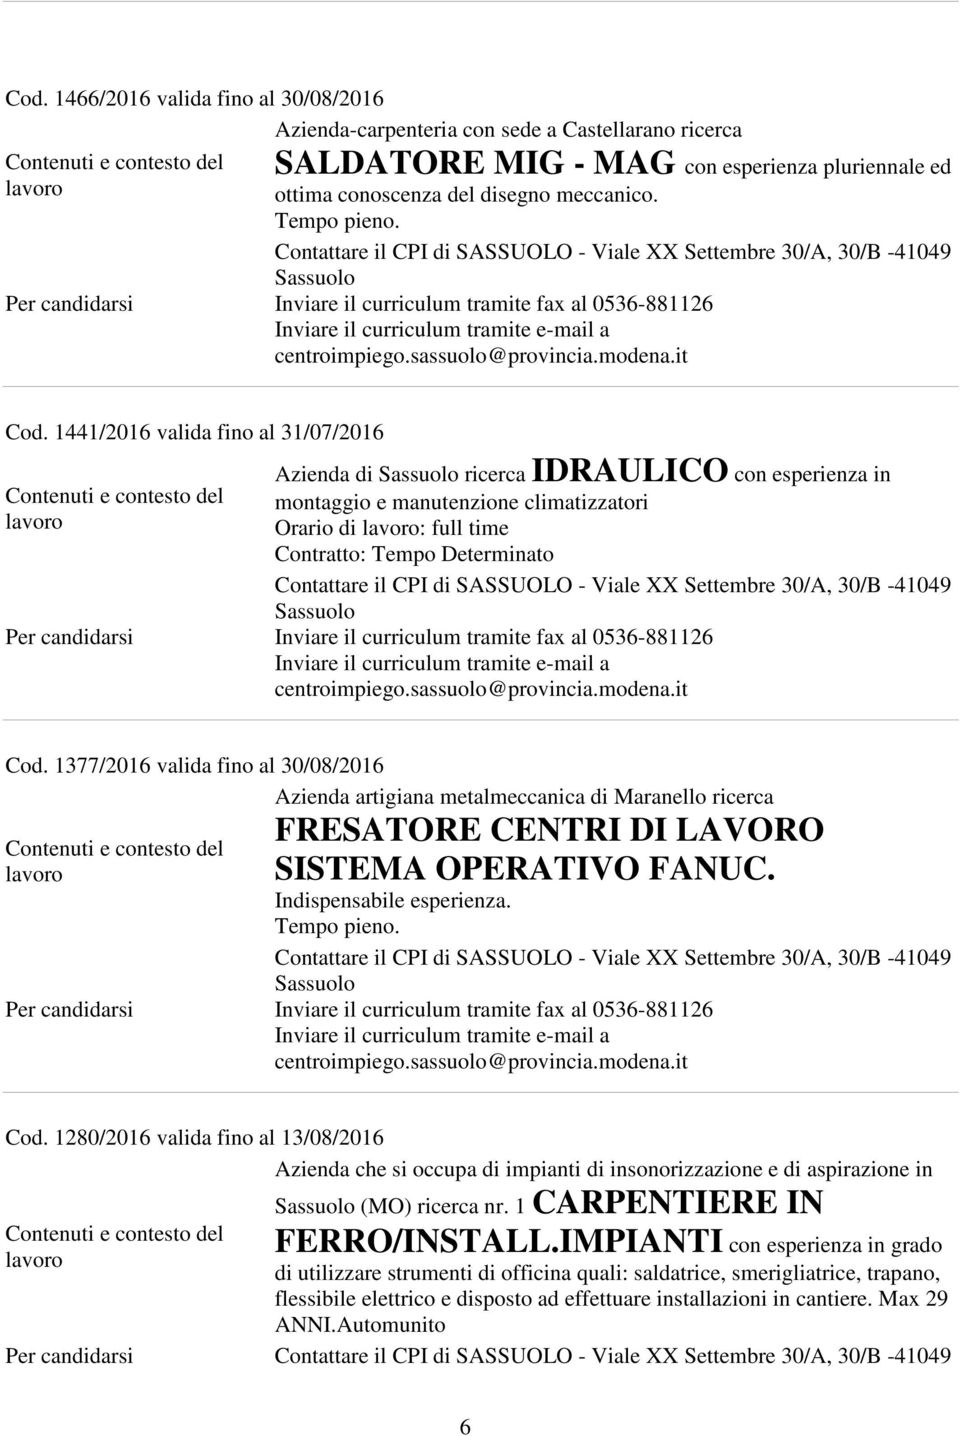 1377/2016 valida fino al 30/08/2016 Azienda artigiana metalmeccanica di Maranello ricerca FRESATORE CENTRI DI LAVORO SISTEMA OPERATIVO FANUC. Indispensabile esperienza. Tempo pieno. Cod.